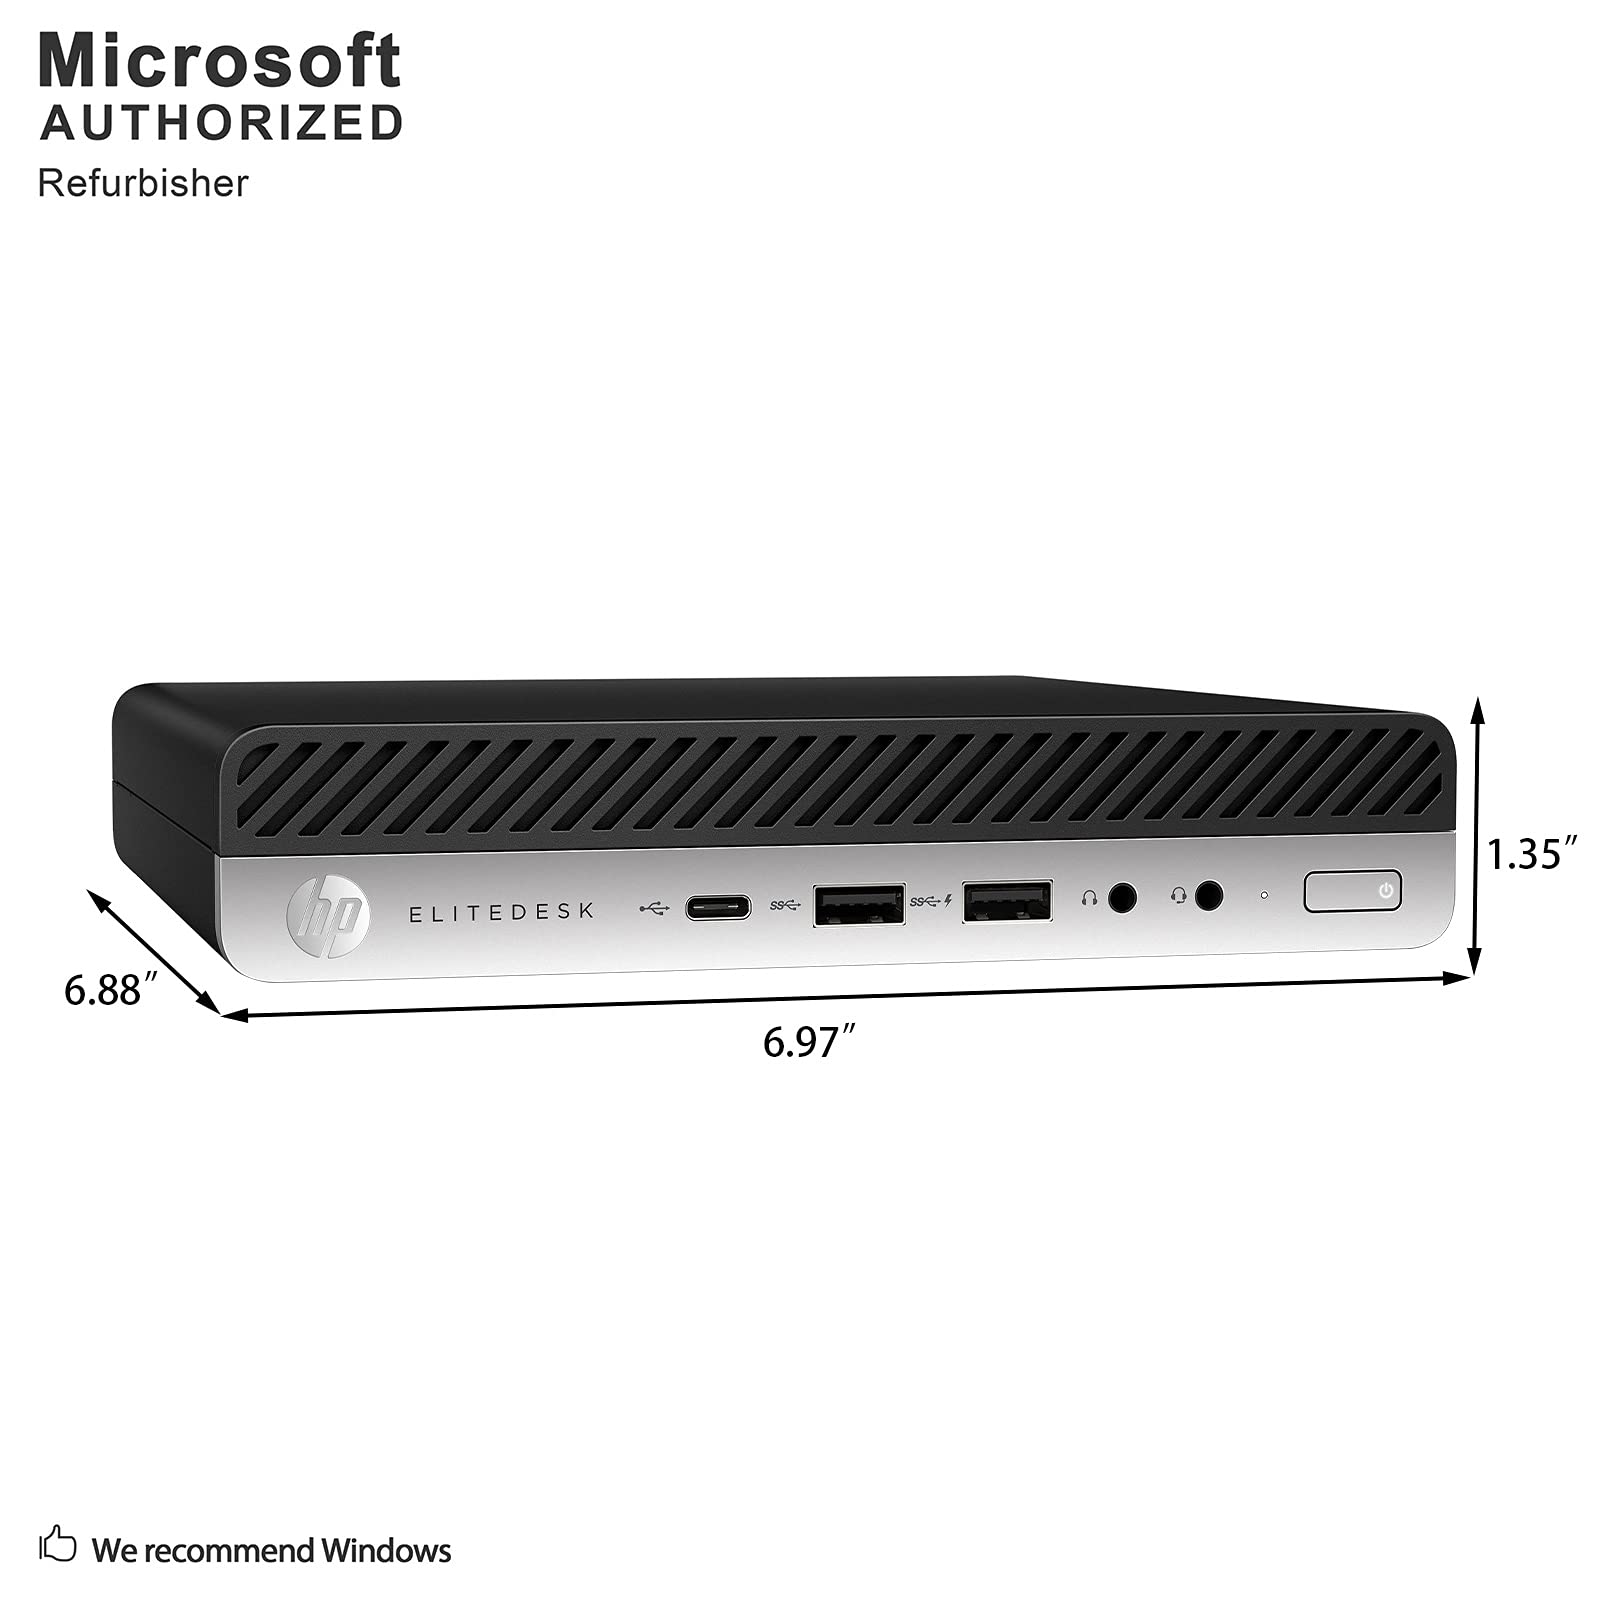 HP EliteDesk 800 G3 Desktop Mini Business PC Windows 10 Computer (Intel Core i5-6500T up to 3.1GHz, 8GB DDR4 RAM, 256GB SSD, WiFi, Bluetooth, USB Type-C 3.1, 2 x DisplayPort, Win 10 Pro) (Renewed)